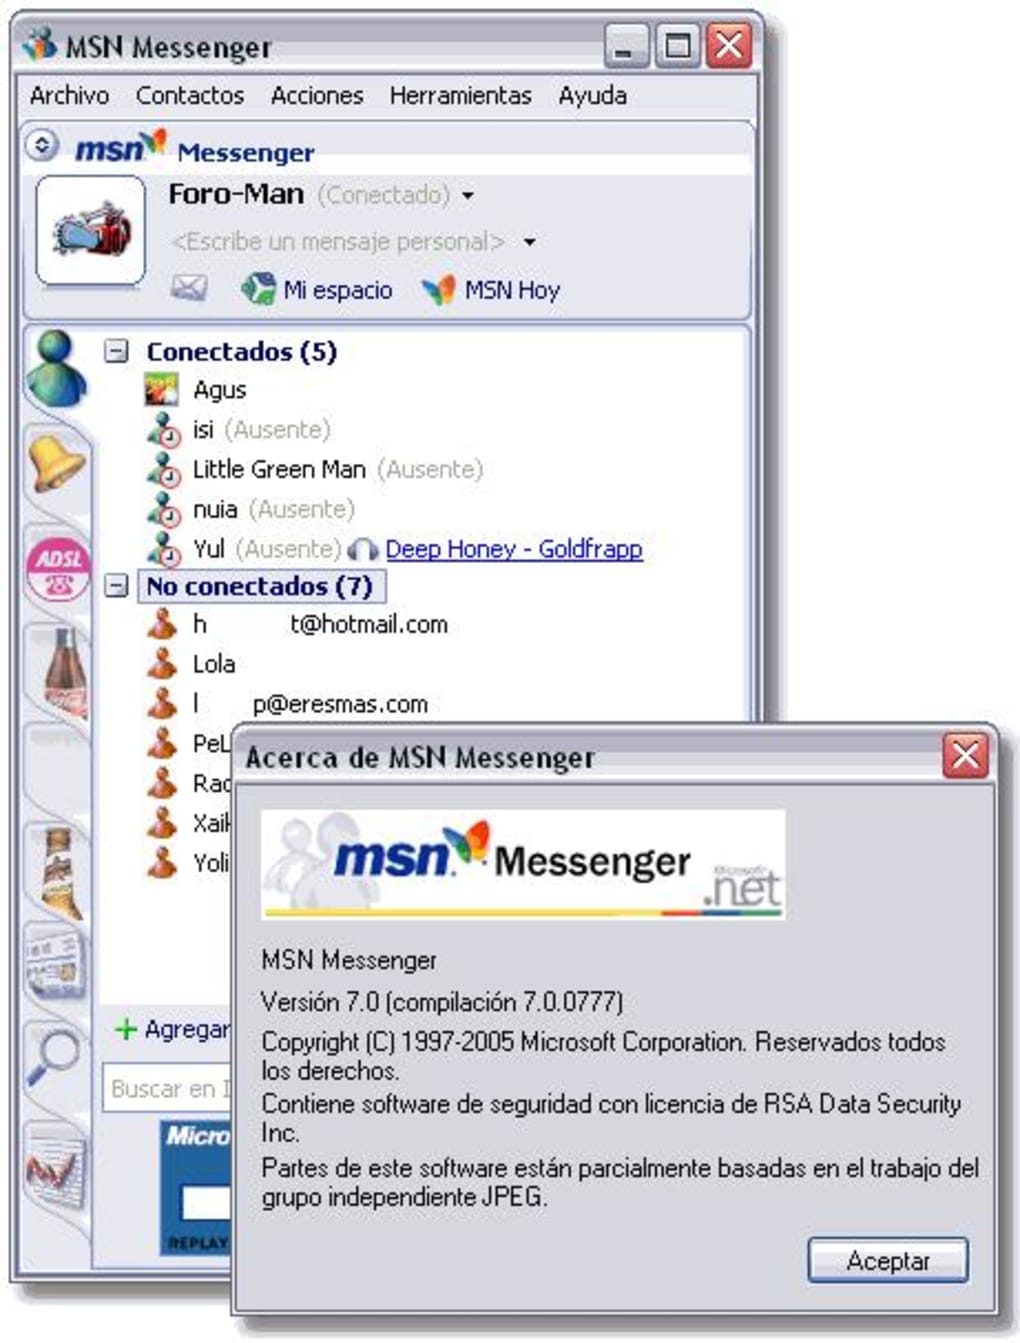 msn messenger app